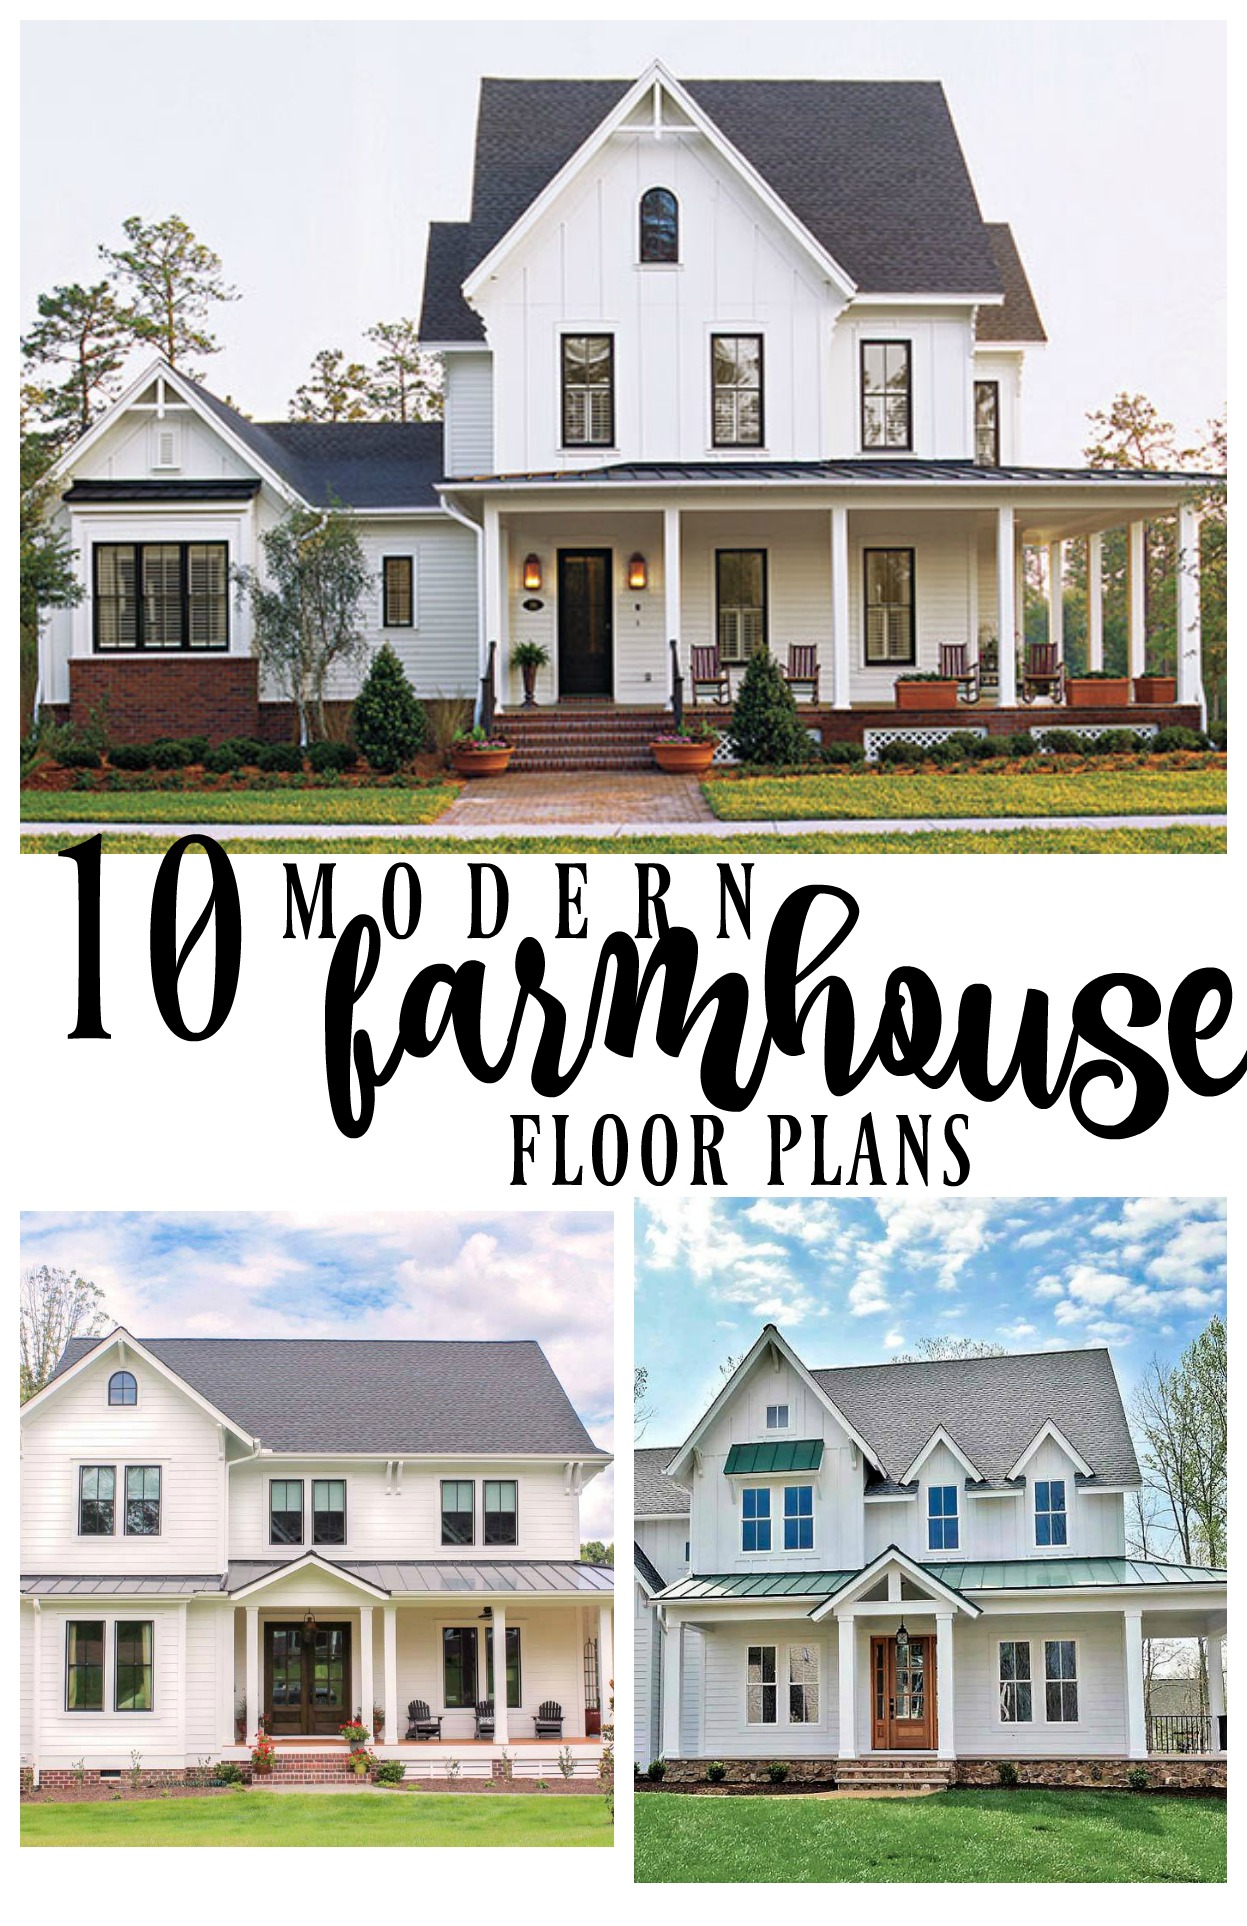 10 Modern Farmhouse Floor Plans I Love, 2 Story Farmhouse Plans